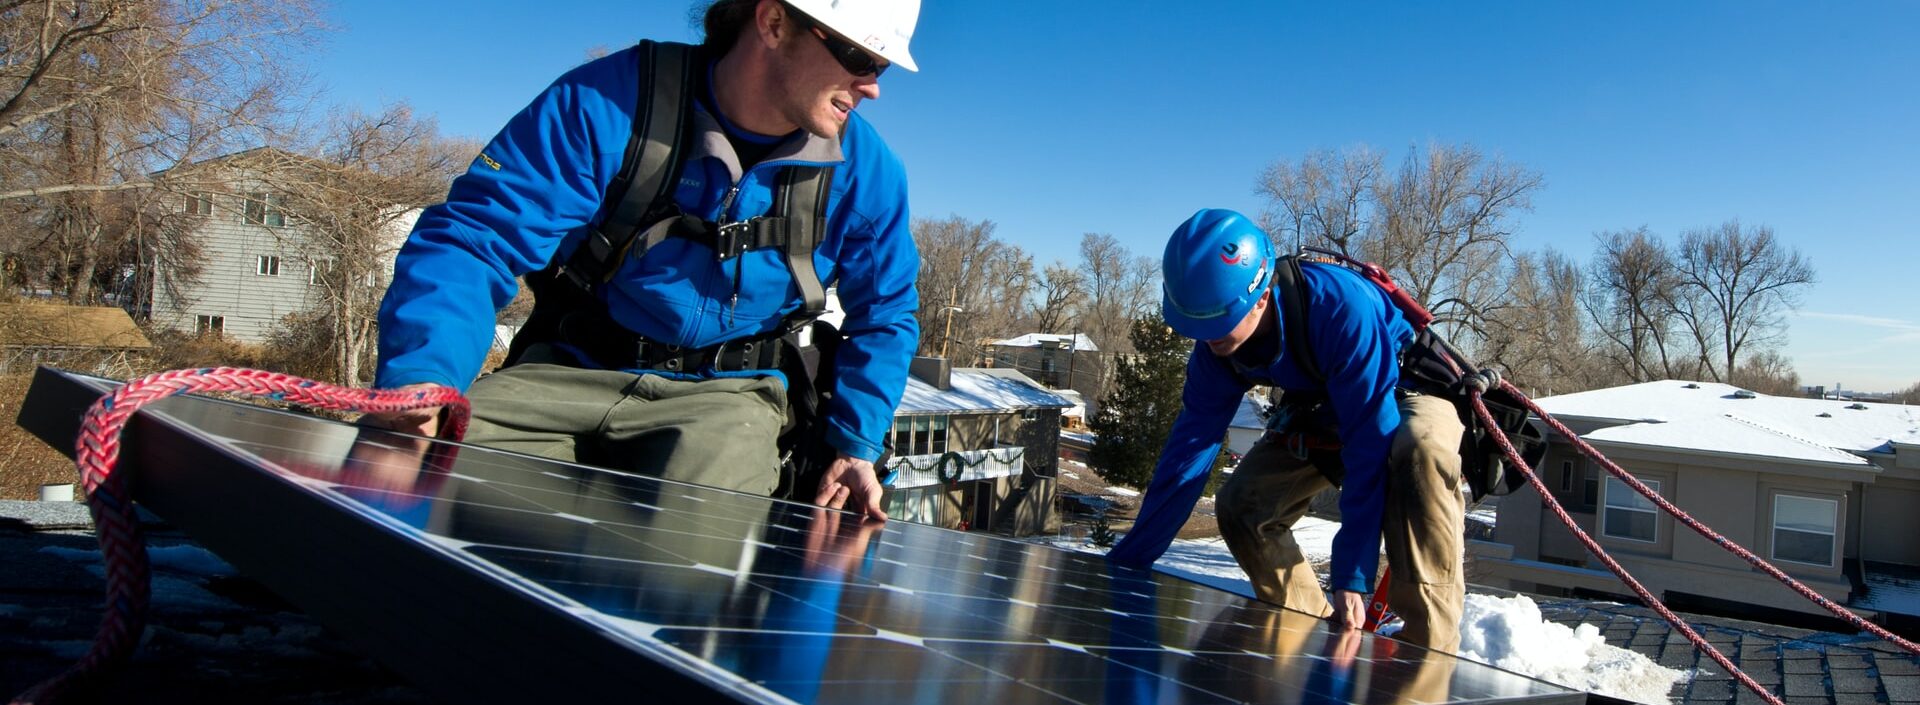 Instalando Painel Solar - Franquia de energia solar: 8 coisas que você precisa saber sobre esse investimento